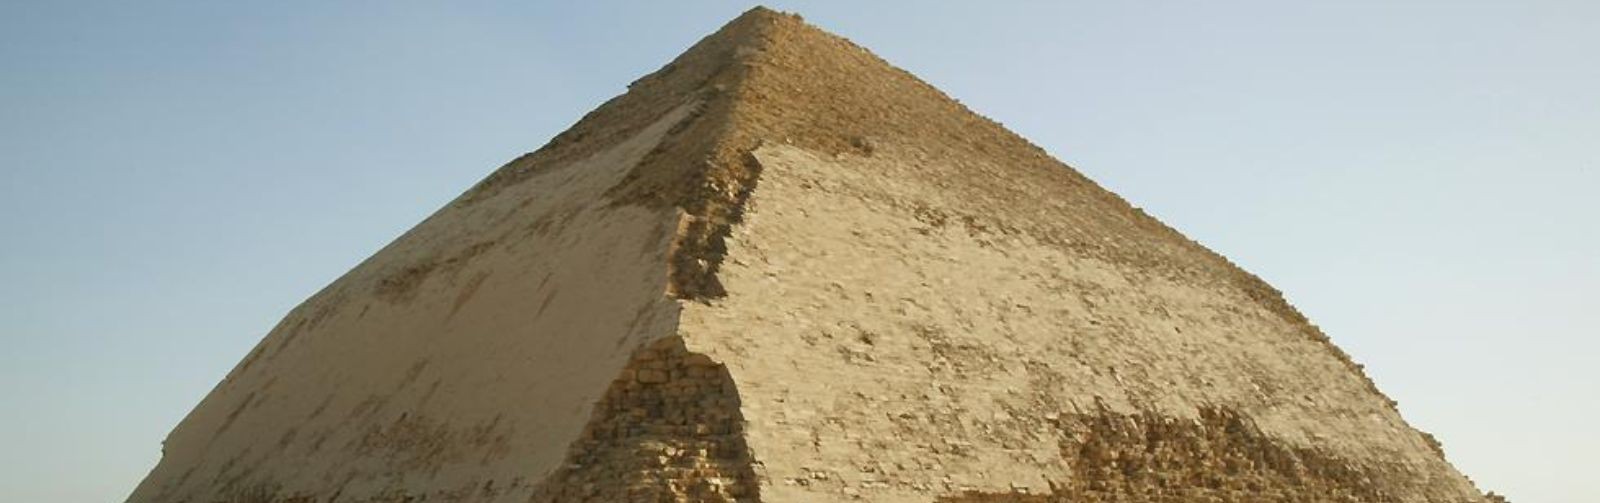 Pirâmides de Dahshur | a pirâmide dobrada e a pirâmide vermelha